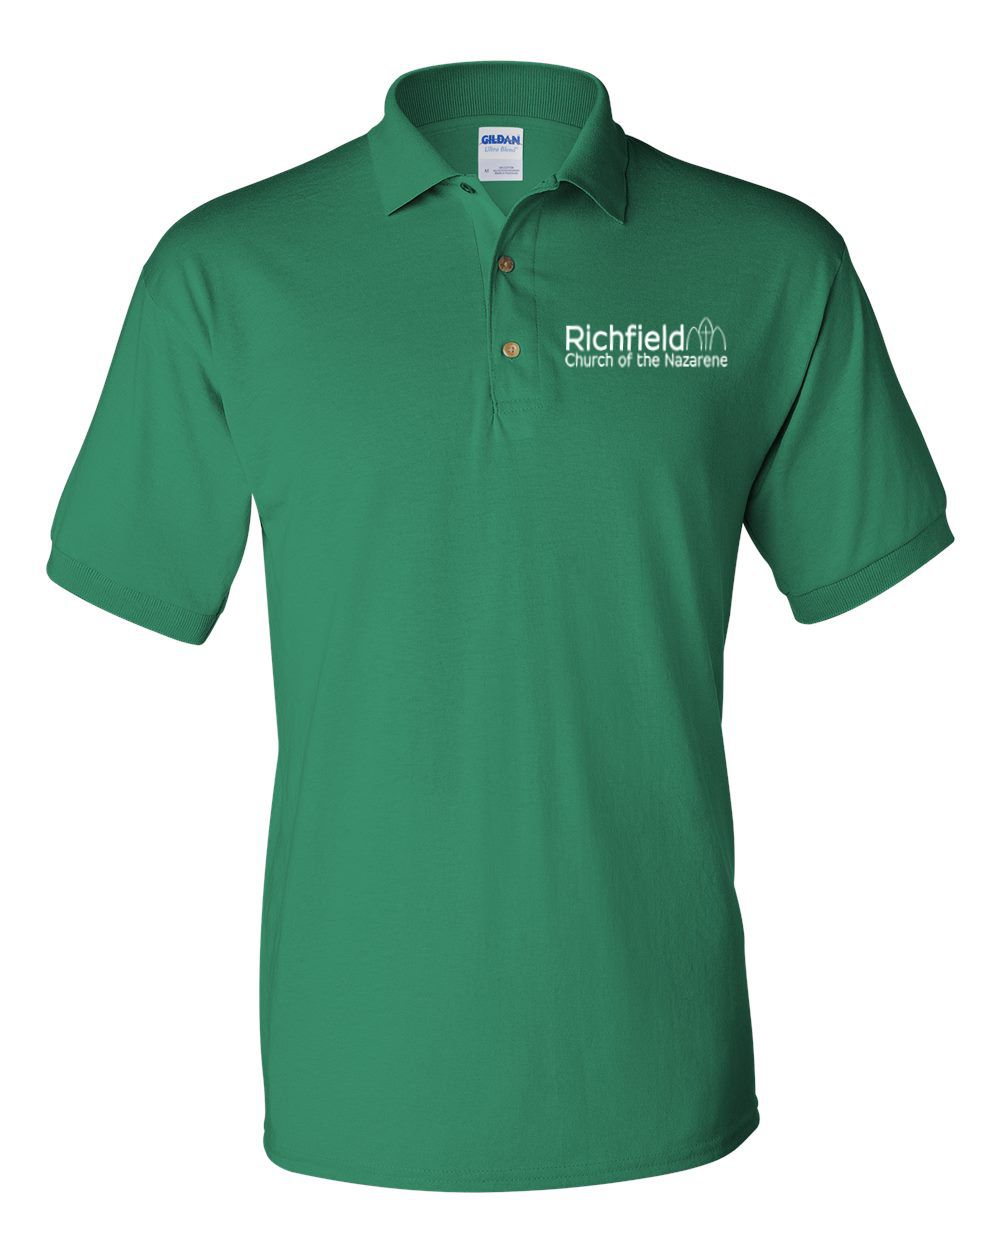 Richfield Church of the Nazarene DryBlend® Adult Jersey Sport Shirt